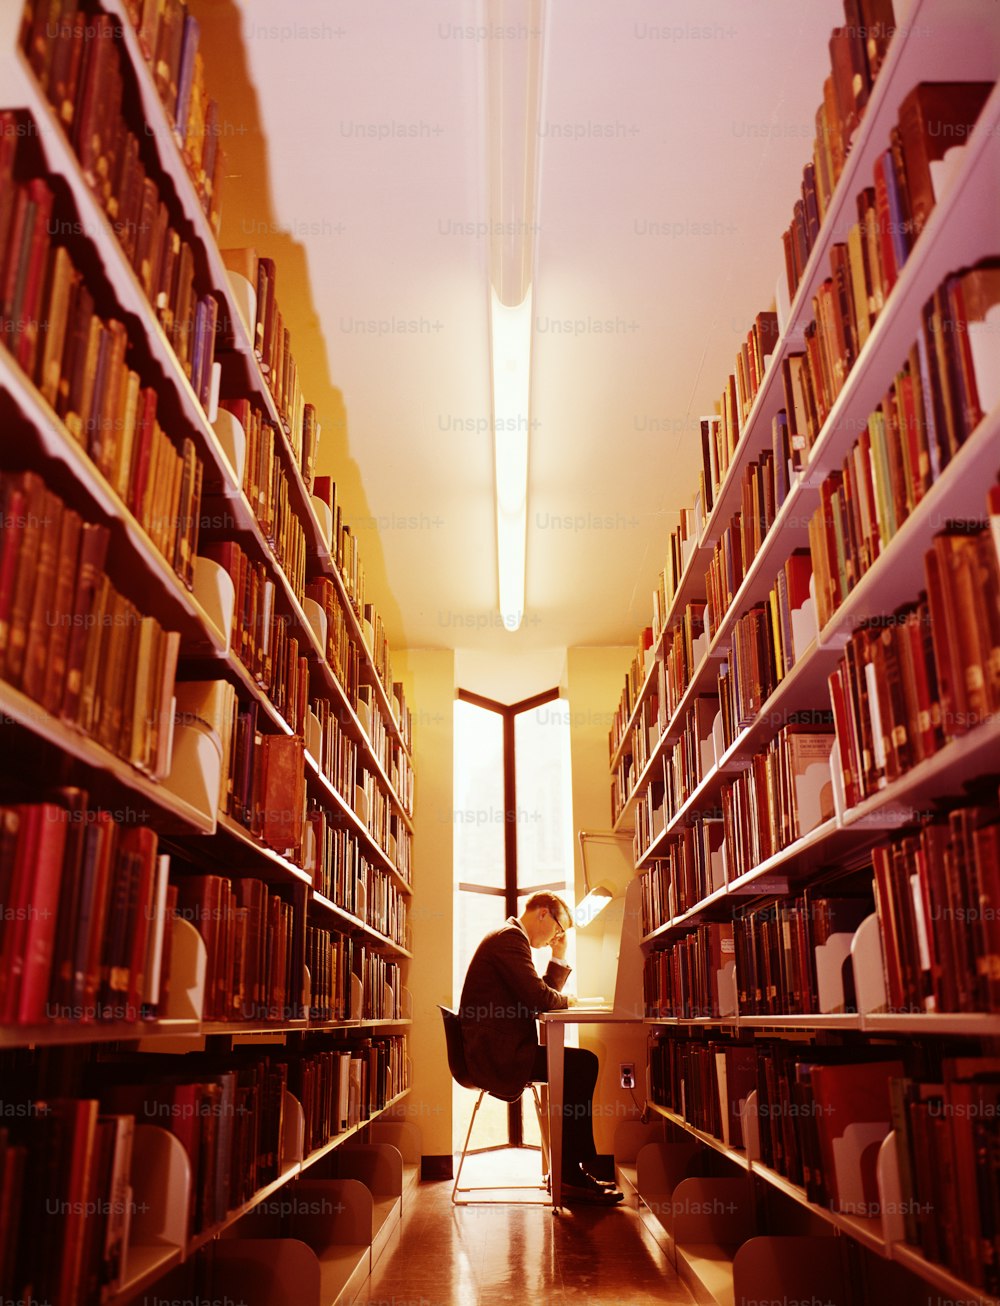 VEREINIGTE STAATEN - CA. 1960er JAHRE: Mann in Bibliothek.